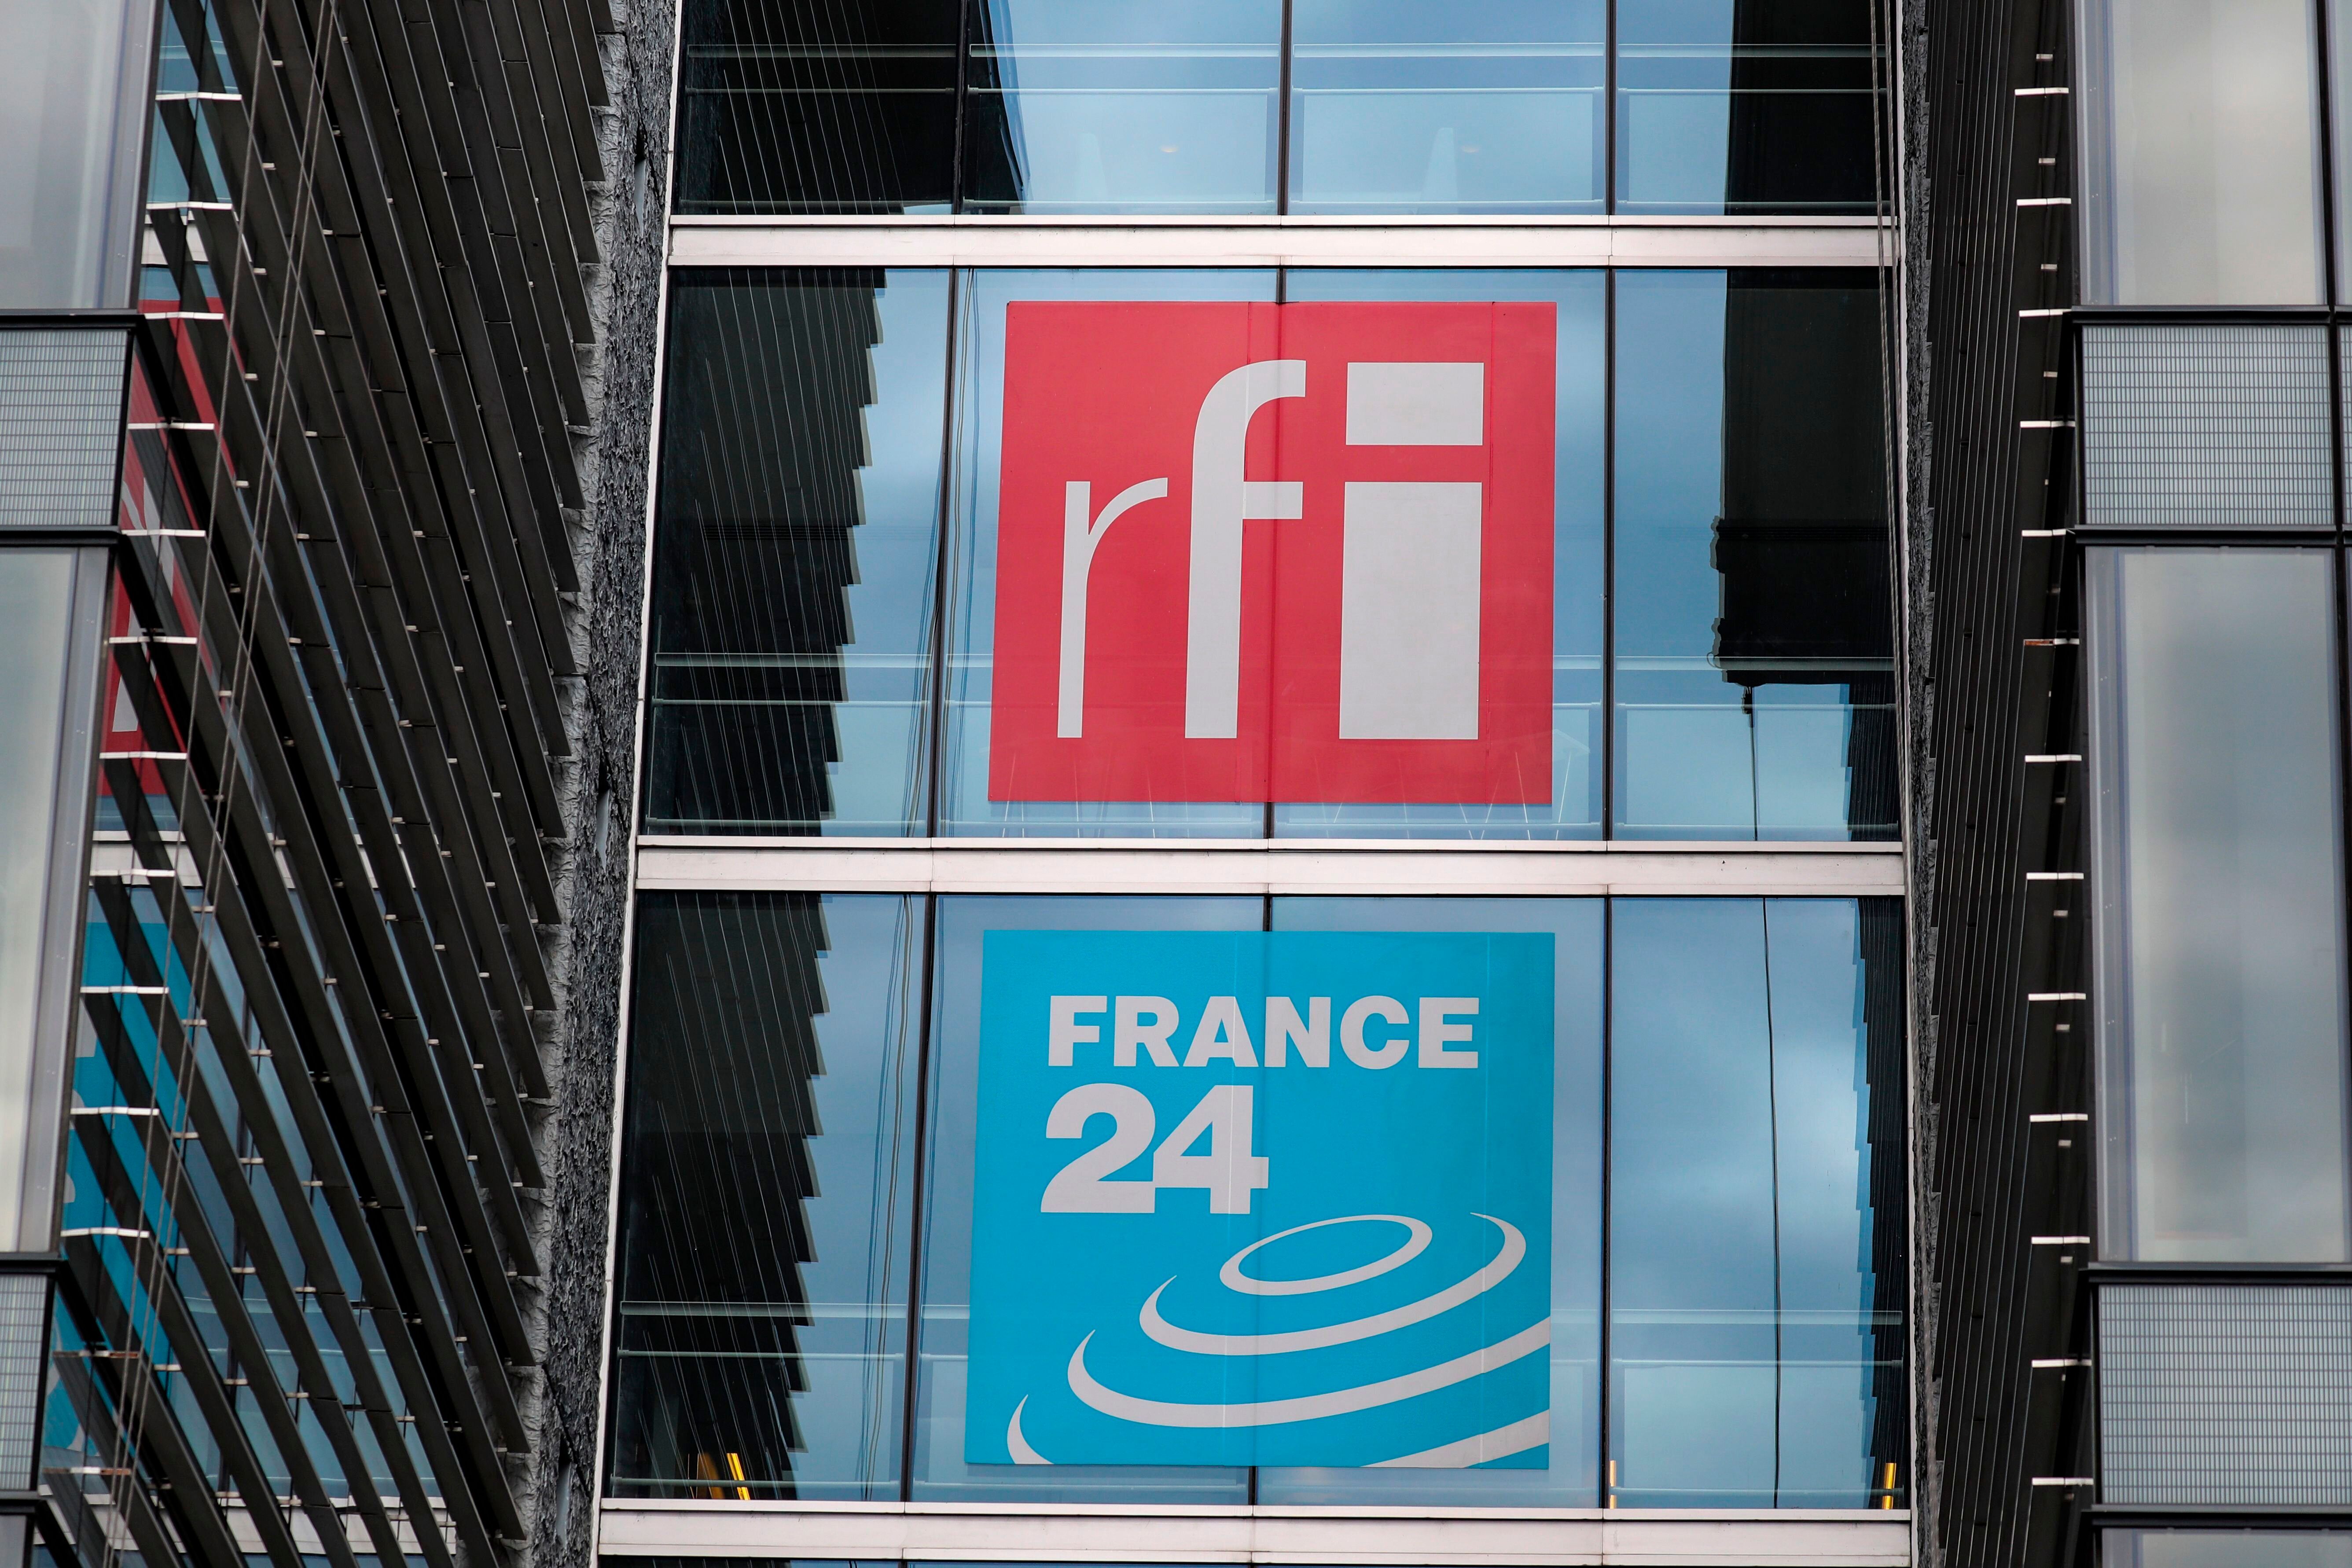 Le siège de France Medias Monde, la maison-mère de RFI et France 24 à Issy-les-Moulineaux...